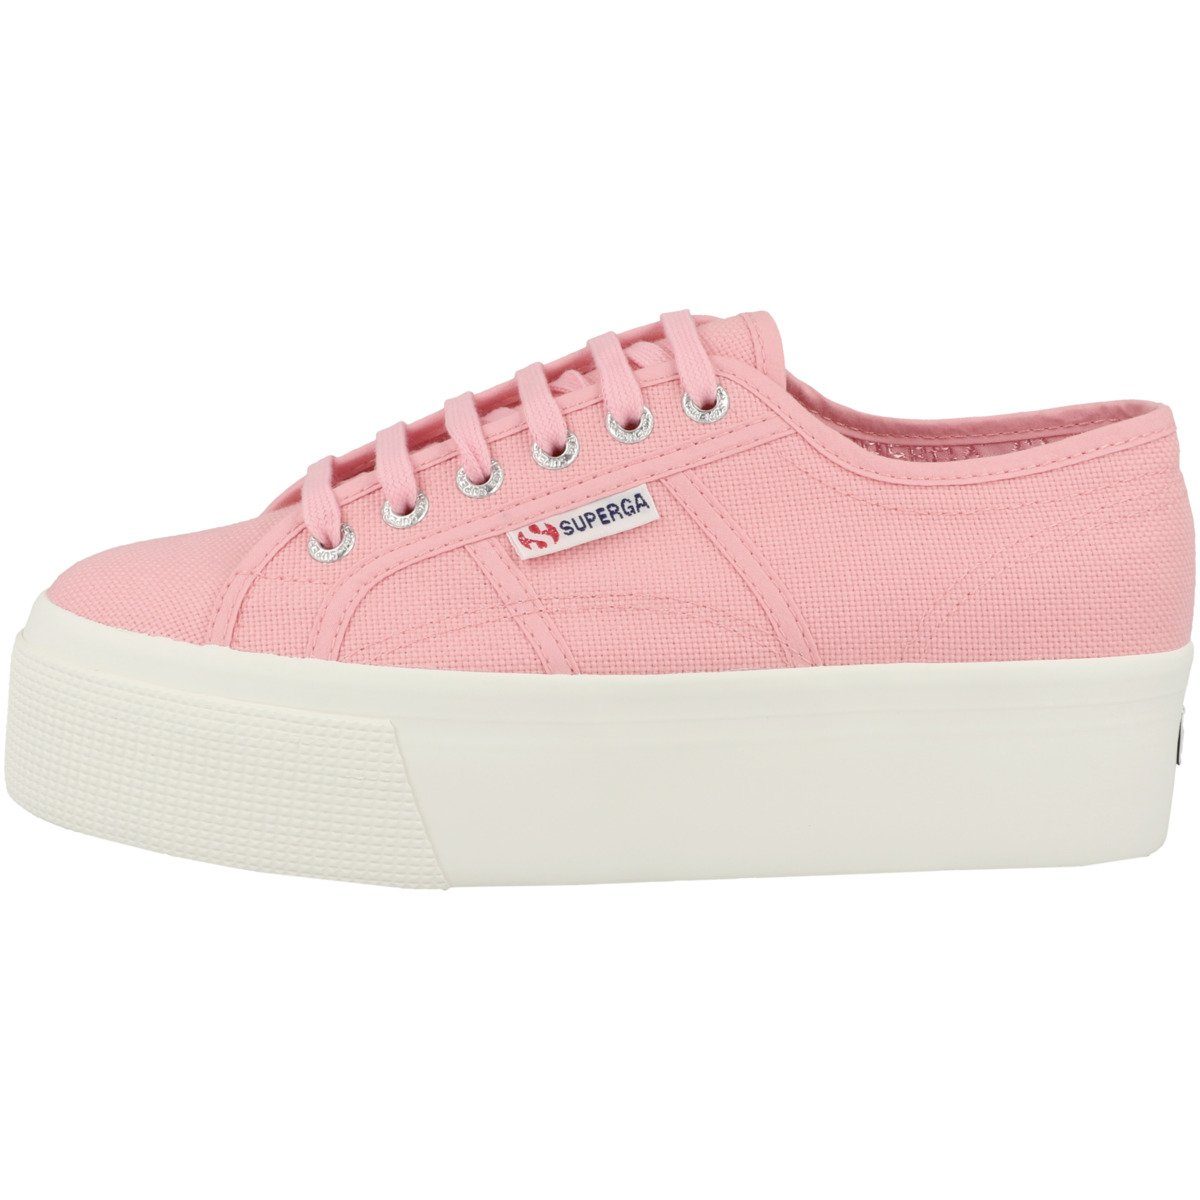 Superga 2790 Cotw Linea up an down Damen Sneaker pink